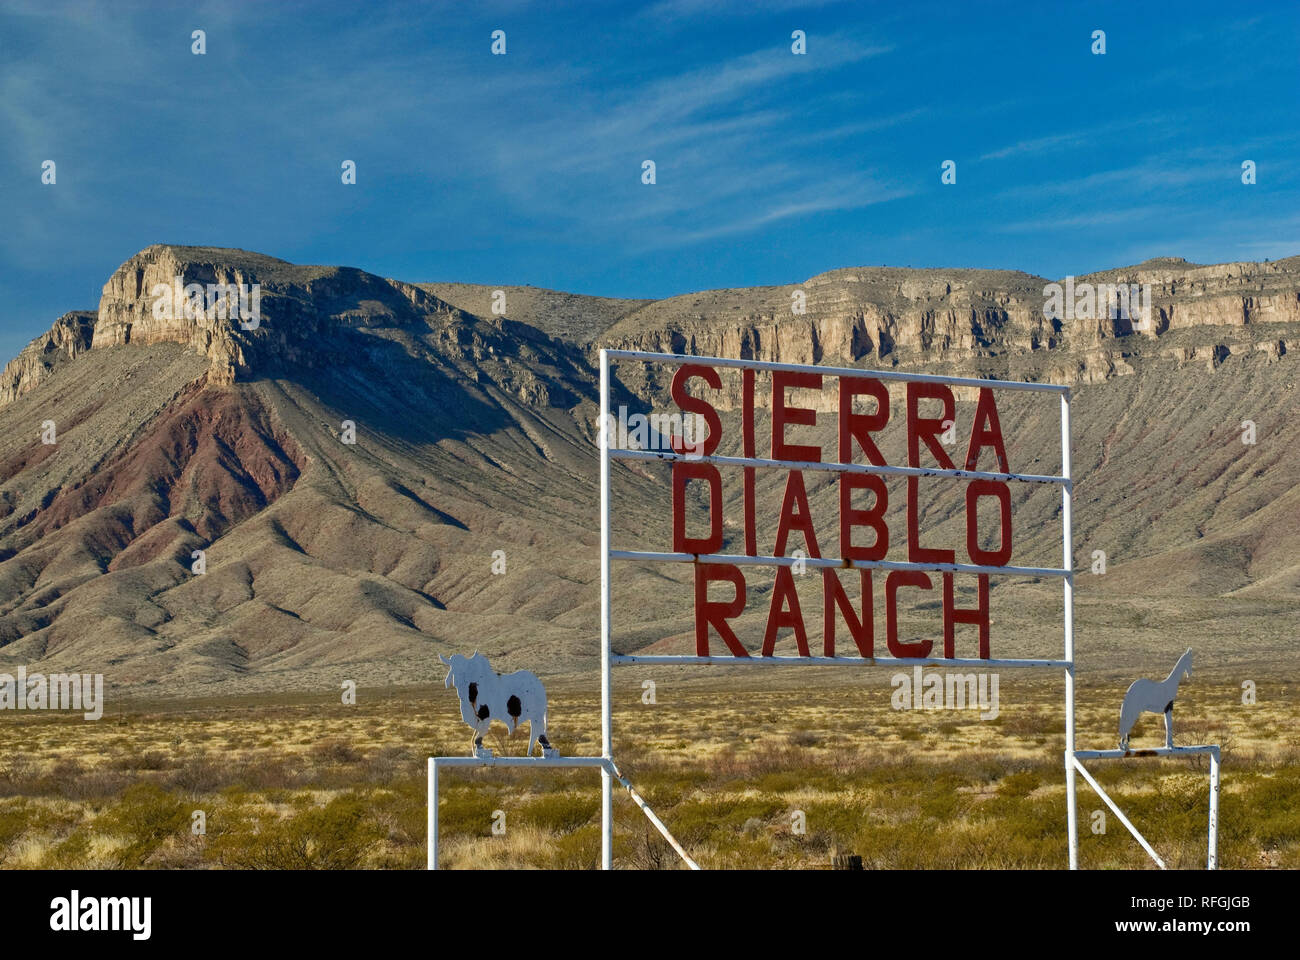 Ranch segno di Big Bend Country con la Sierra Diablo mountain range in distanza, deserto del Chihuahuan, vicino a Van Horn, Texas, Stati Uniti d'America Foto Stock